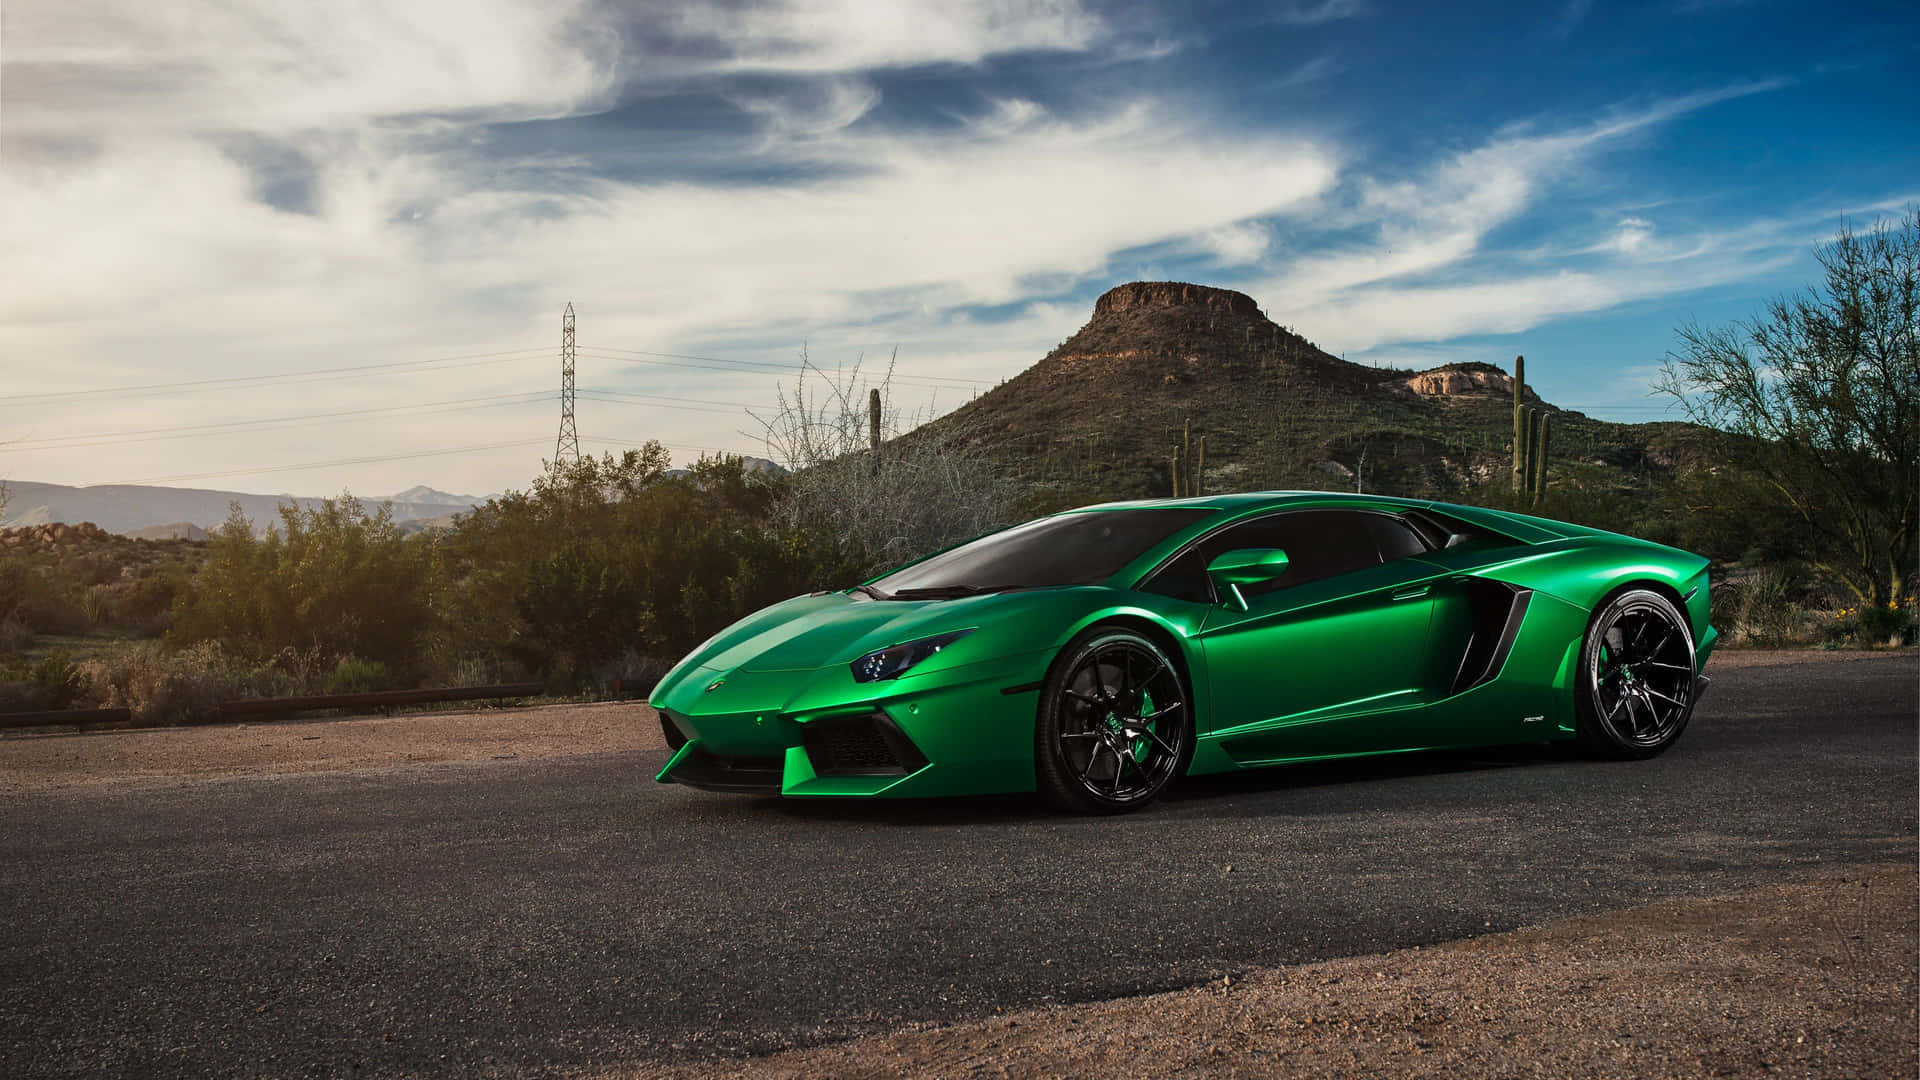 Fondode Pantalla Genial De Un Lamborghini Aventador Verde. Fondo de pantalla